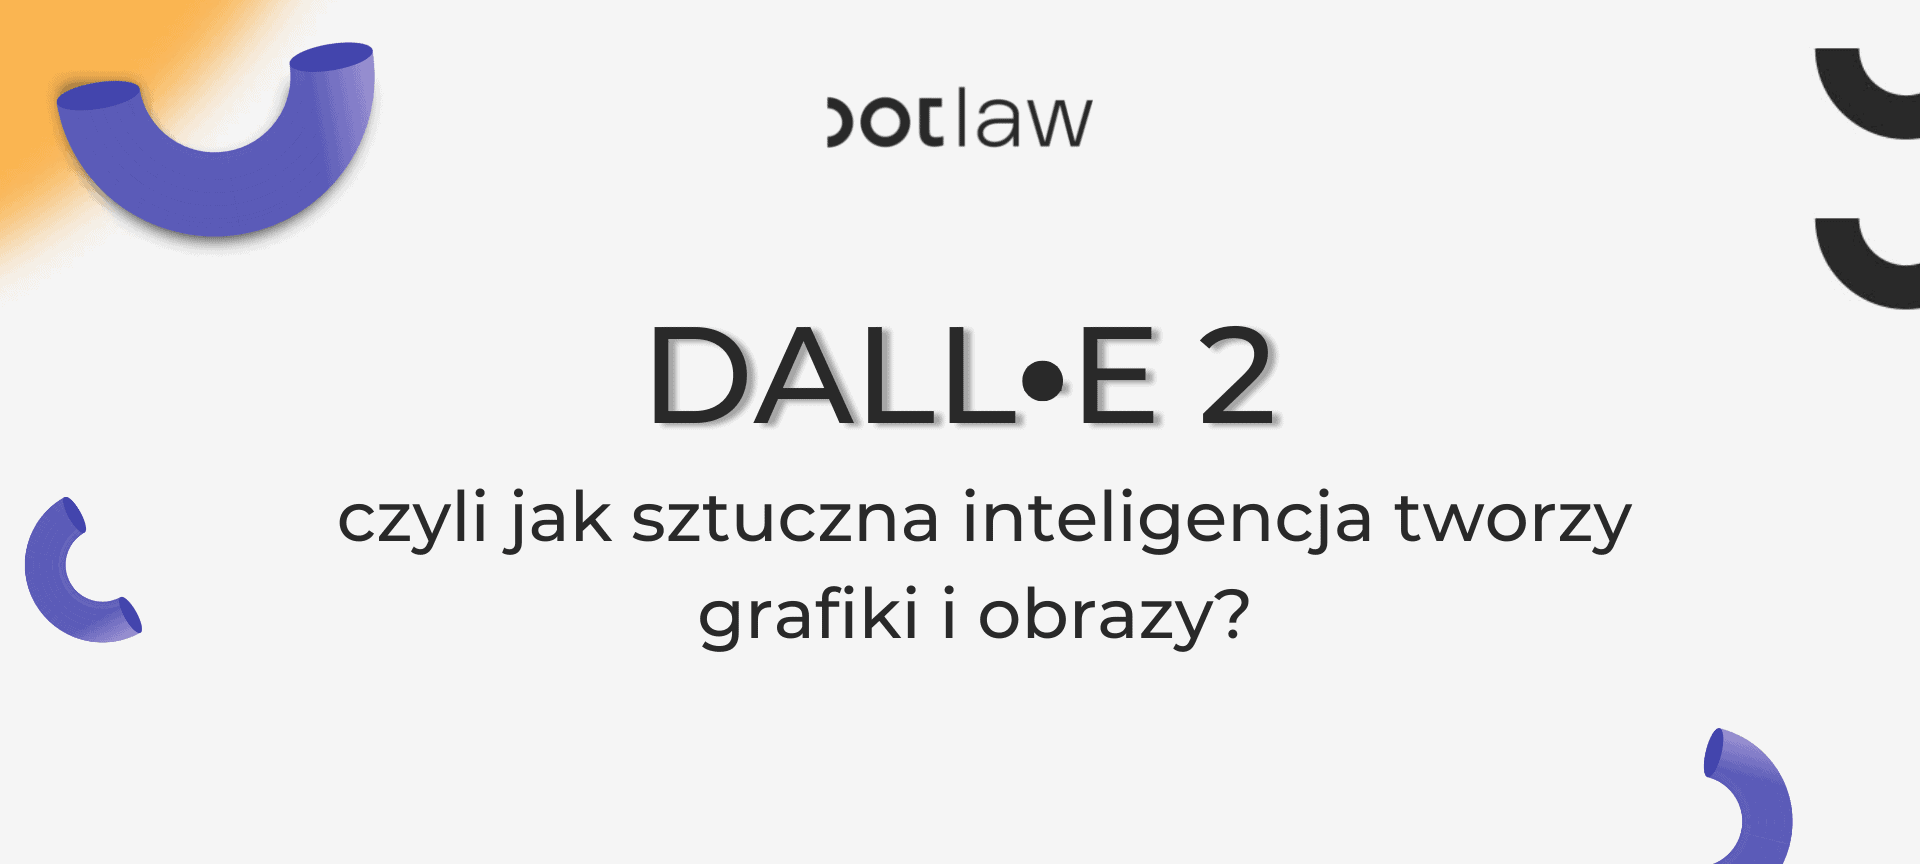 dalle-2 - jak sztuczna inteligencja tworzy grafiki i obrazy